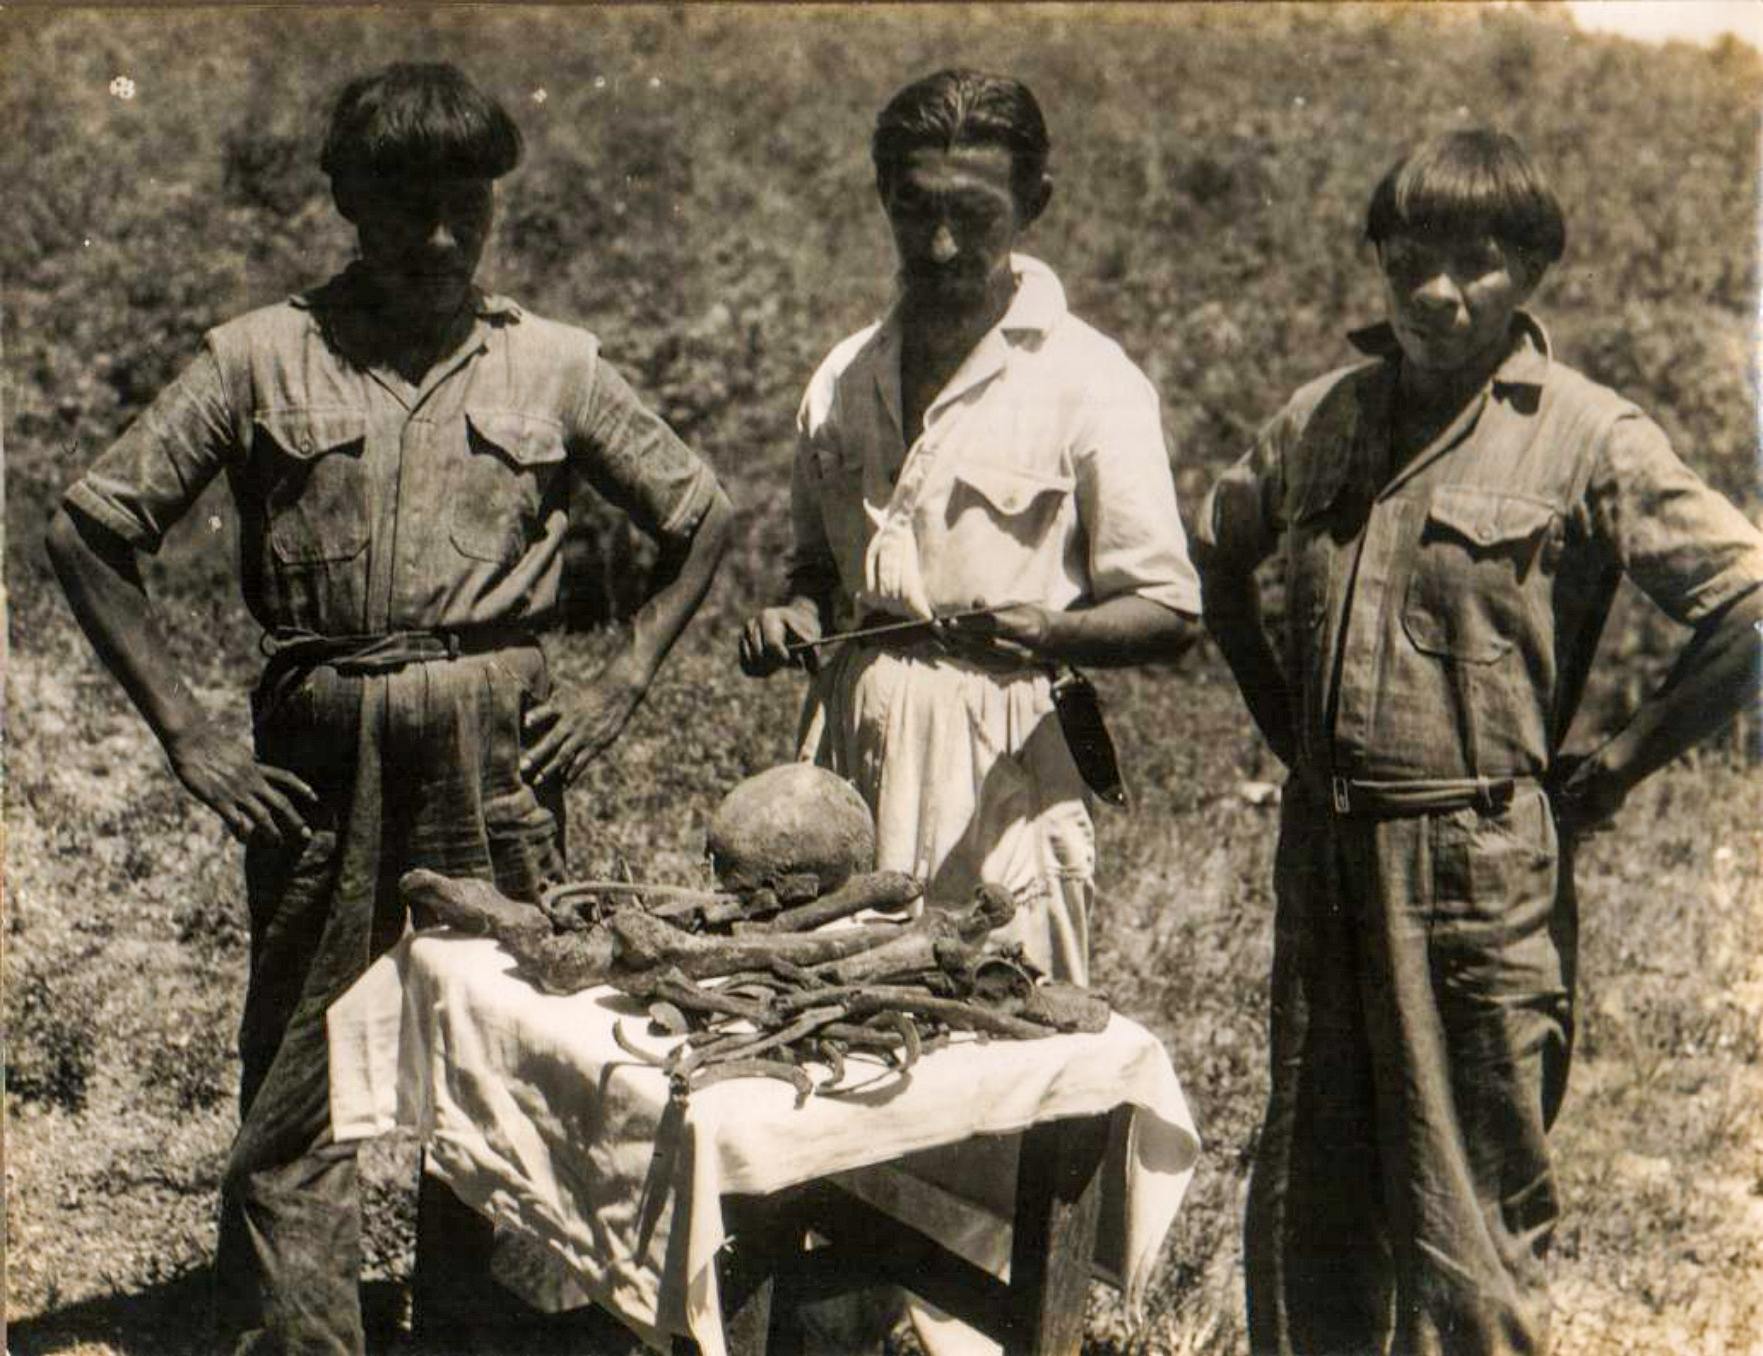 Orlando Villas Bôas e dois índios Kalapalo com o osso do Cel. Fawcett encontrou no local exato onde os anciãos relataram sua morte. foto de 1952. Arquivo CVB da família Villas Bôas